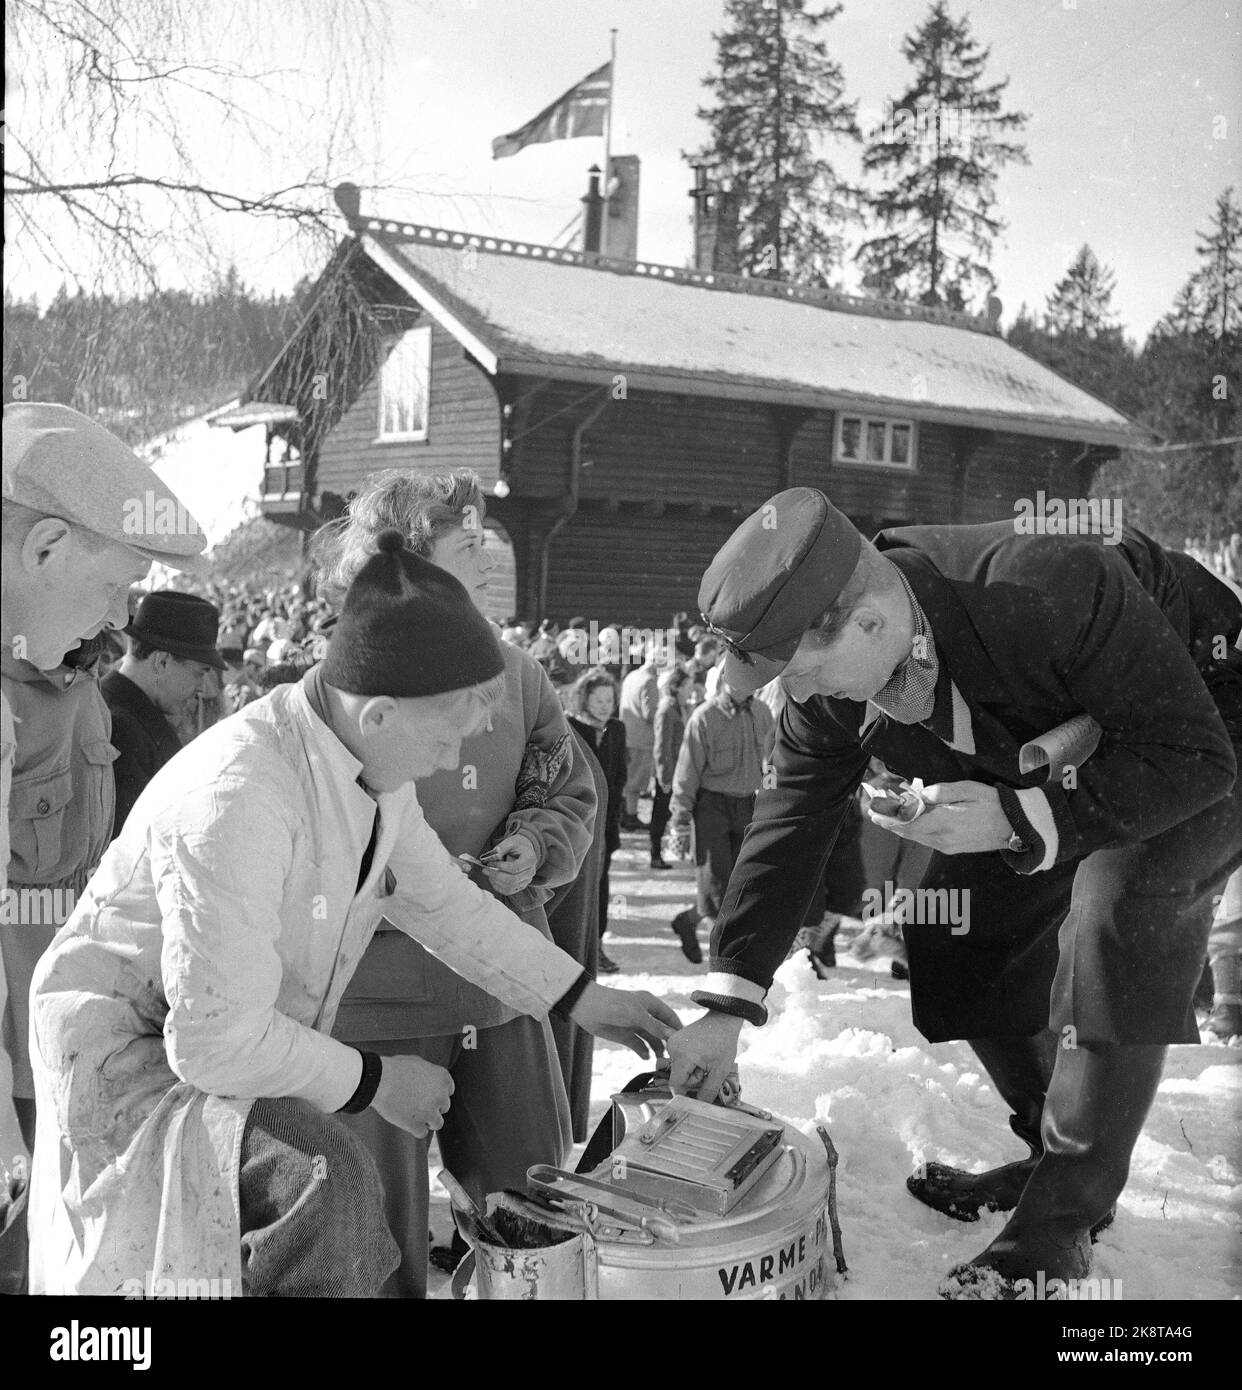 Oslo marzo 1950 Holmenkollagen. Un giovane ragazzo vende salsicce calde in carta da una scatola portatile. Nel contenitore sul lato della scatola ha la senape per coloro che vogliono. Foto: Sverre A. Børretzen / corrente / NTB Foto Stock